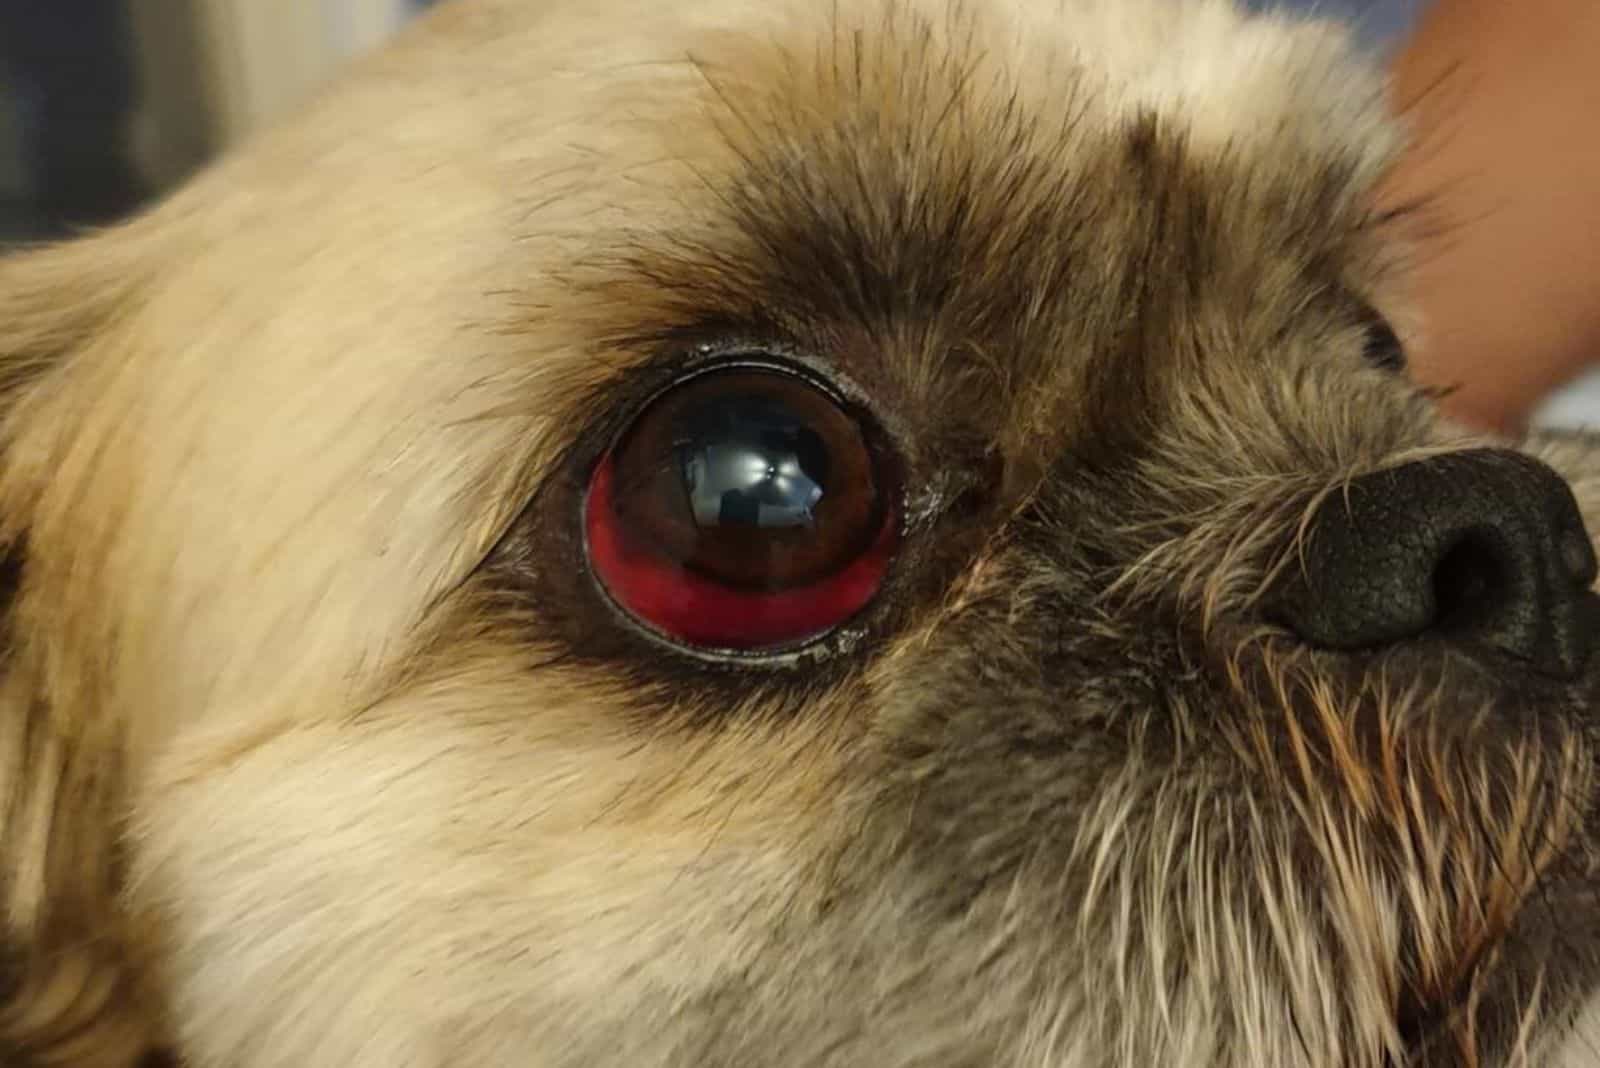 shitzu has a red eye